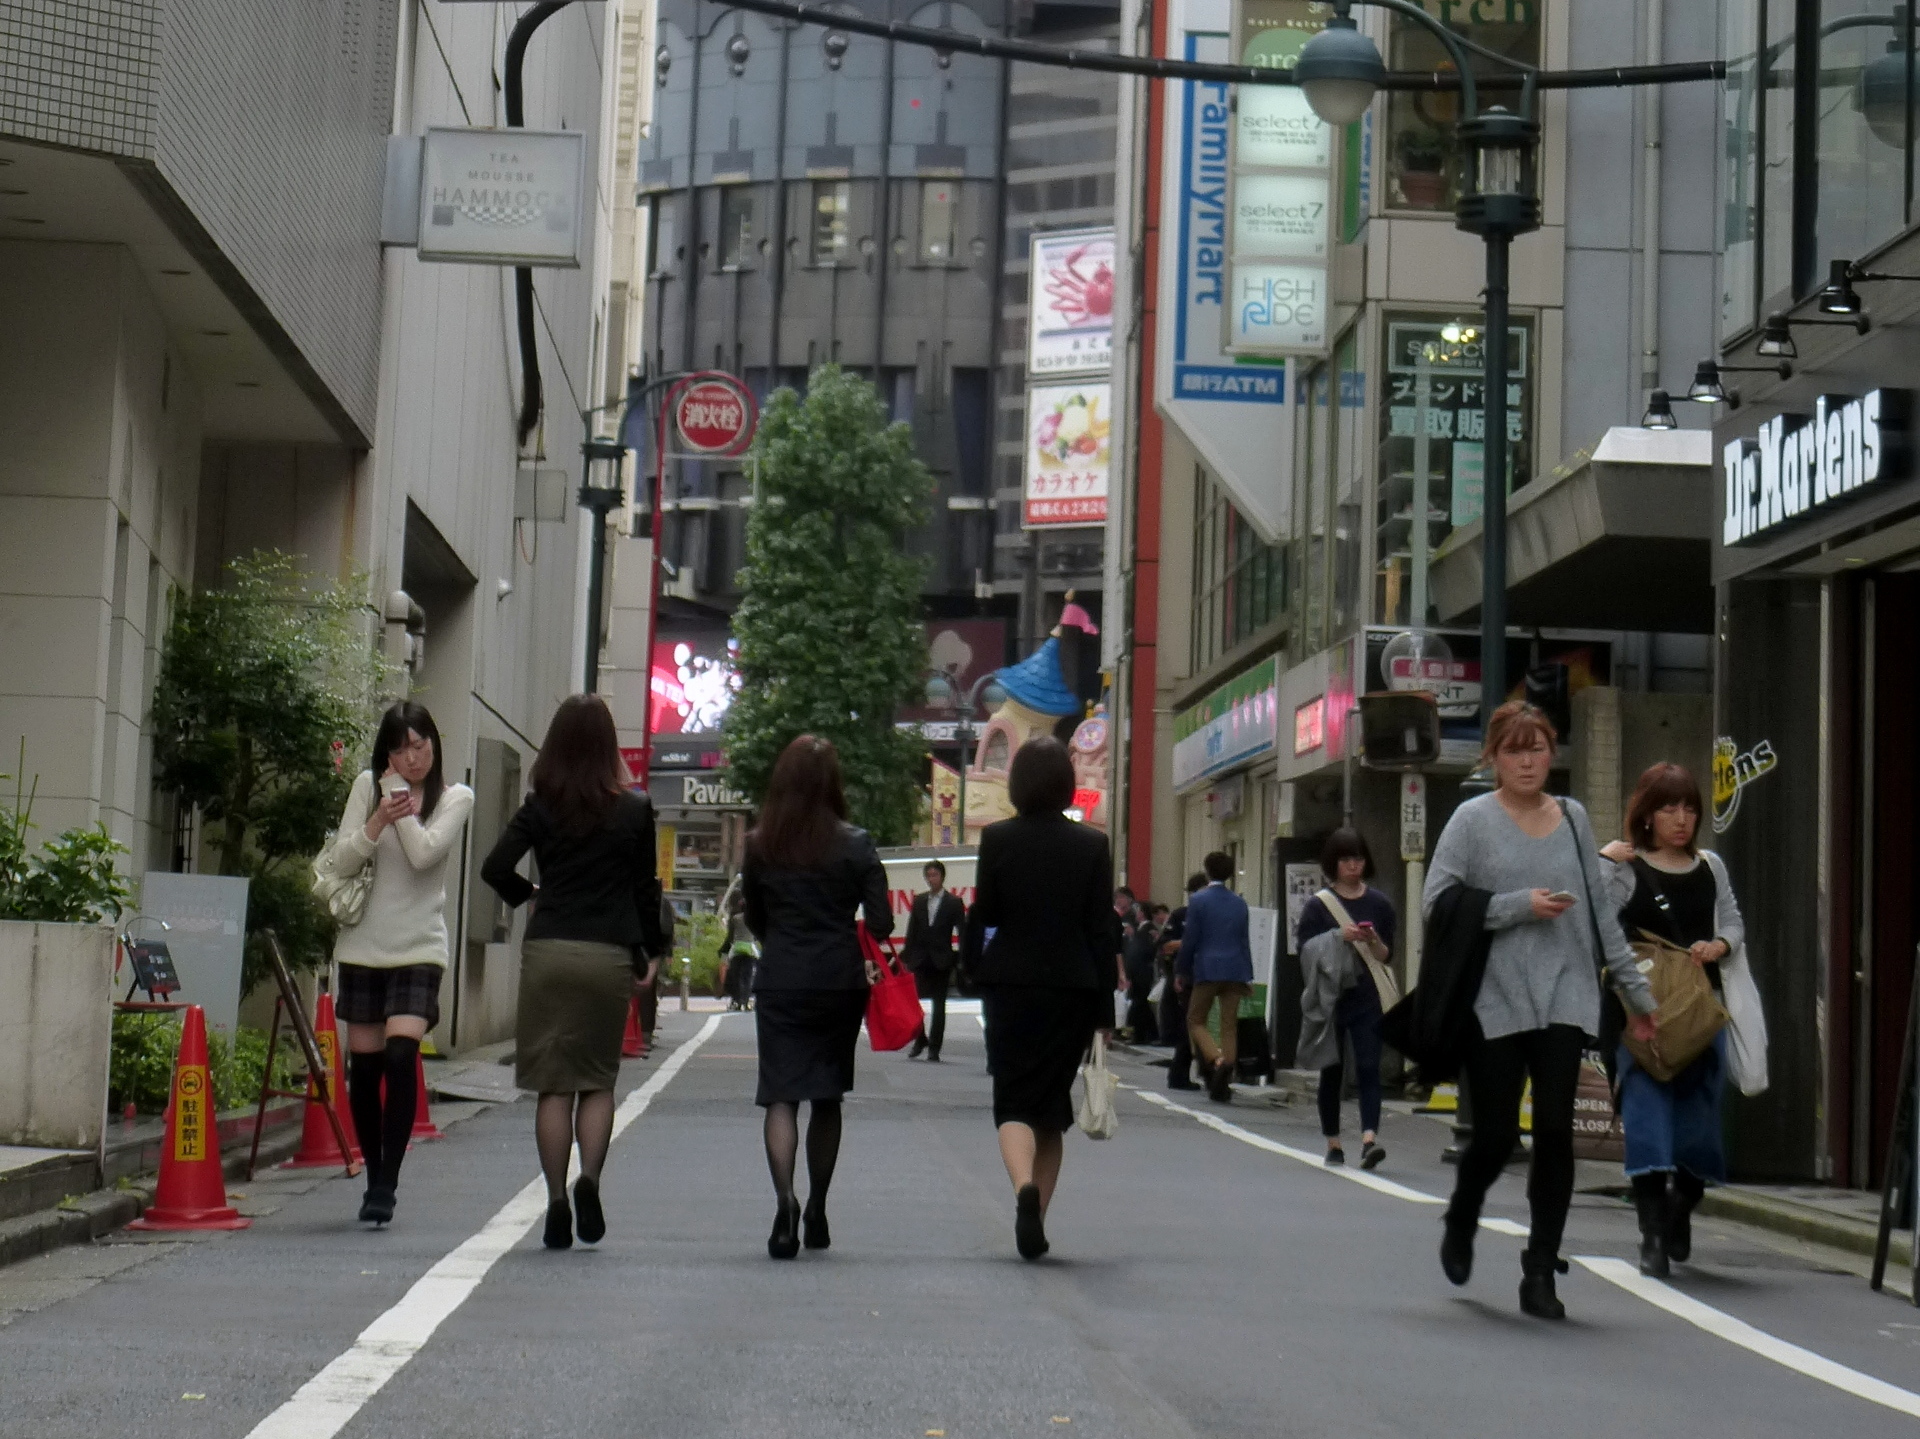 ผลสำรวจคนทำงานเอกชนในญี่ปุ่น พบตำแหน่ง 'ผู้จัดการ' เป็น 'ผู้หญิง' เพียง 8.9%